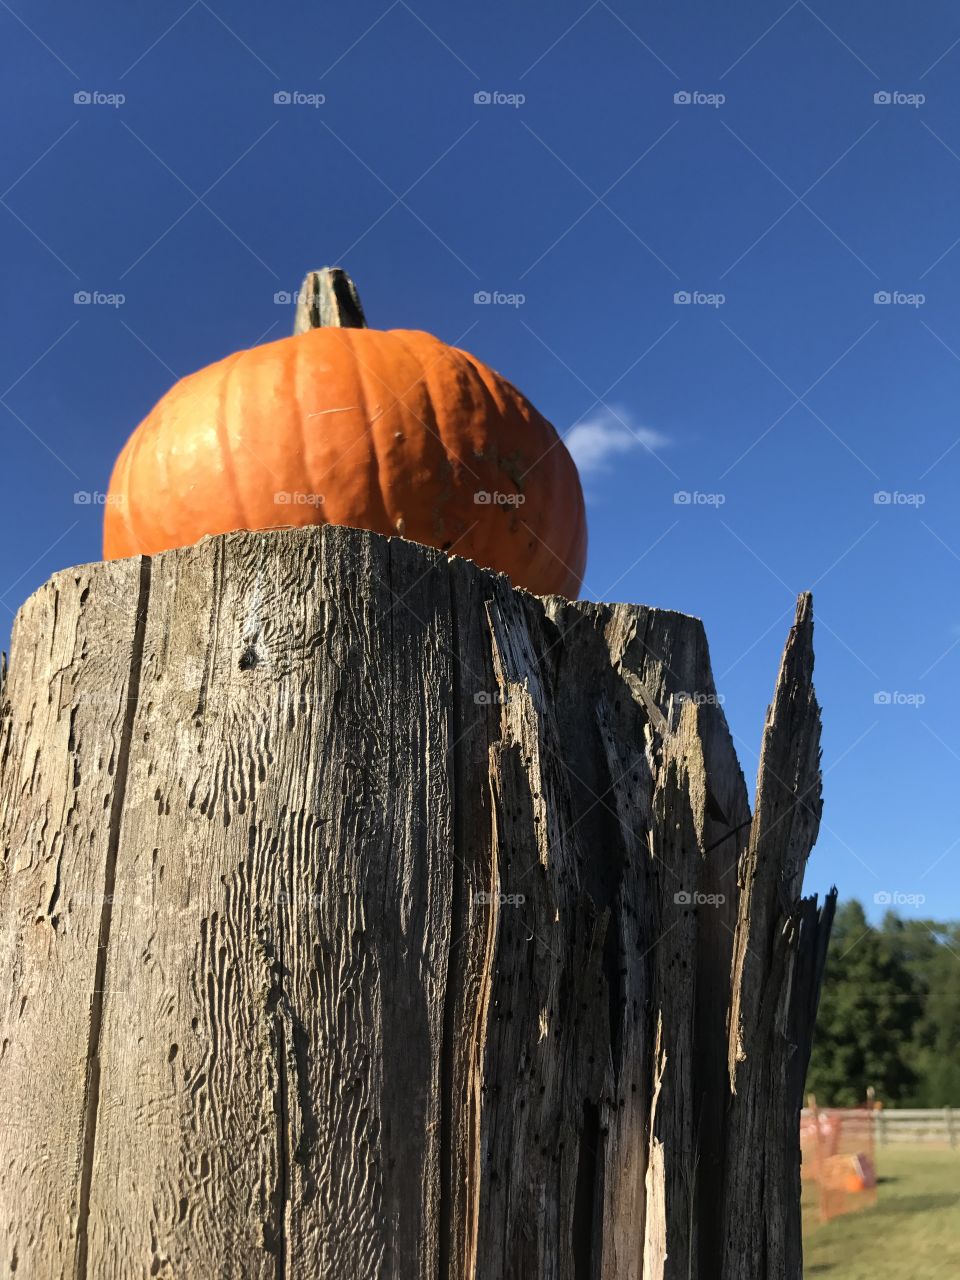 Pumpkin perched